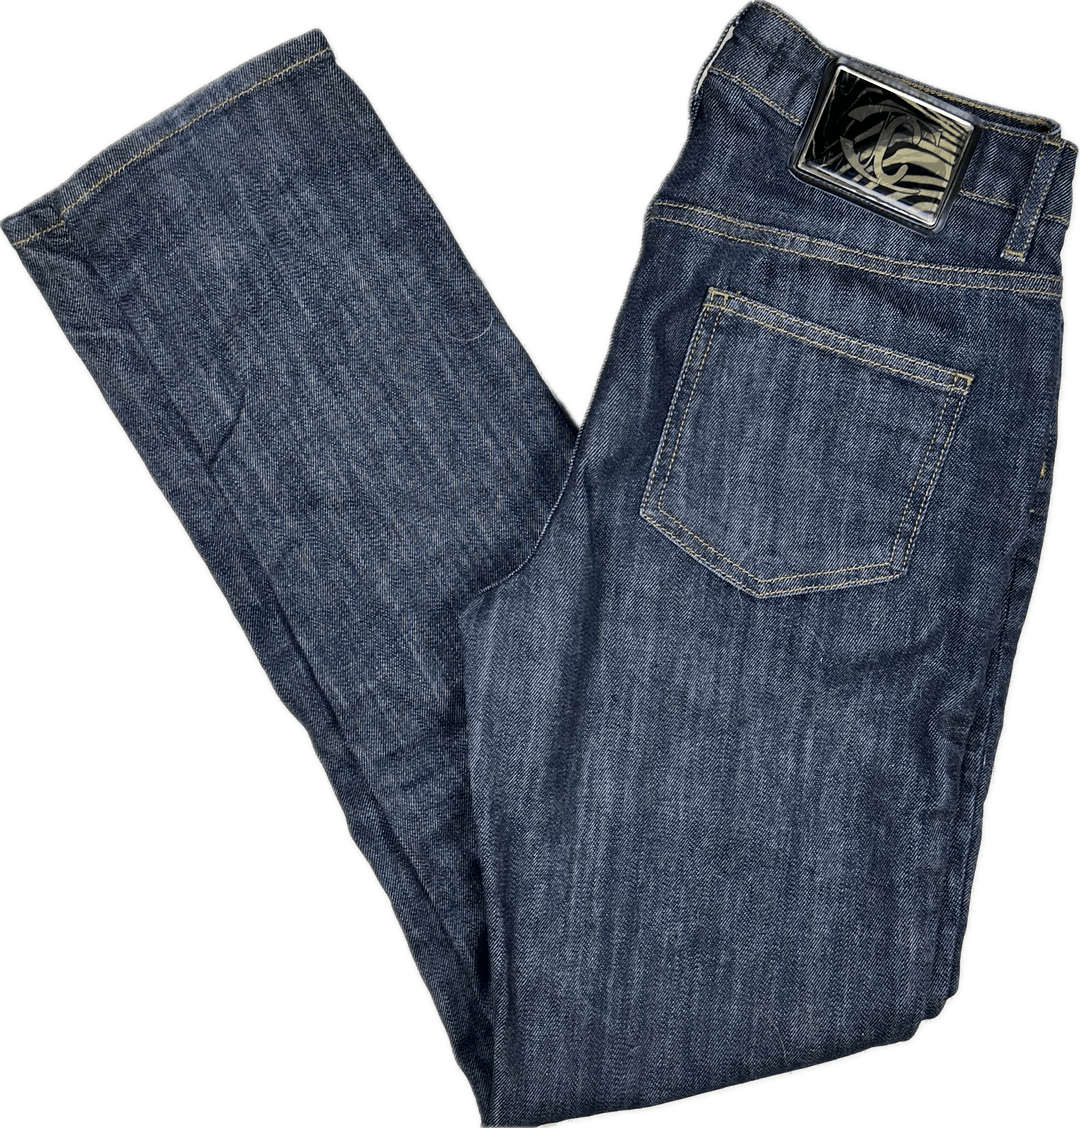 Just Cavalli Italian Ladies Distressed Slim Straight Jeans - Size 28 - Jean Pool